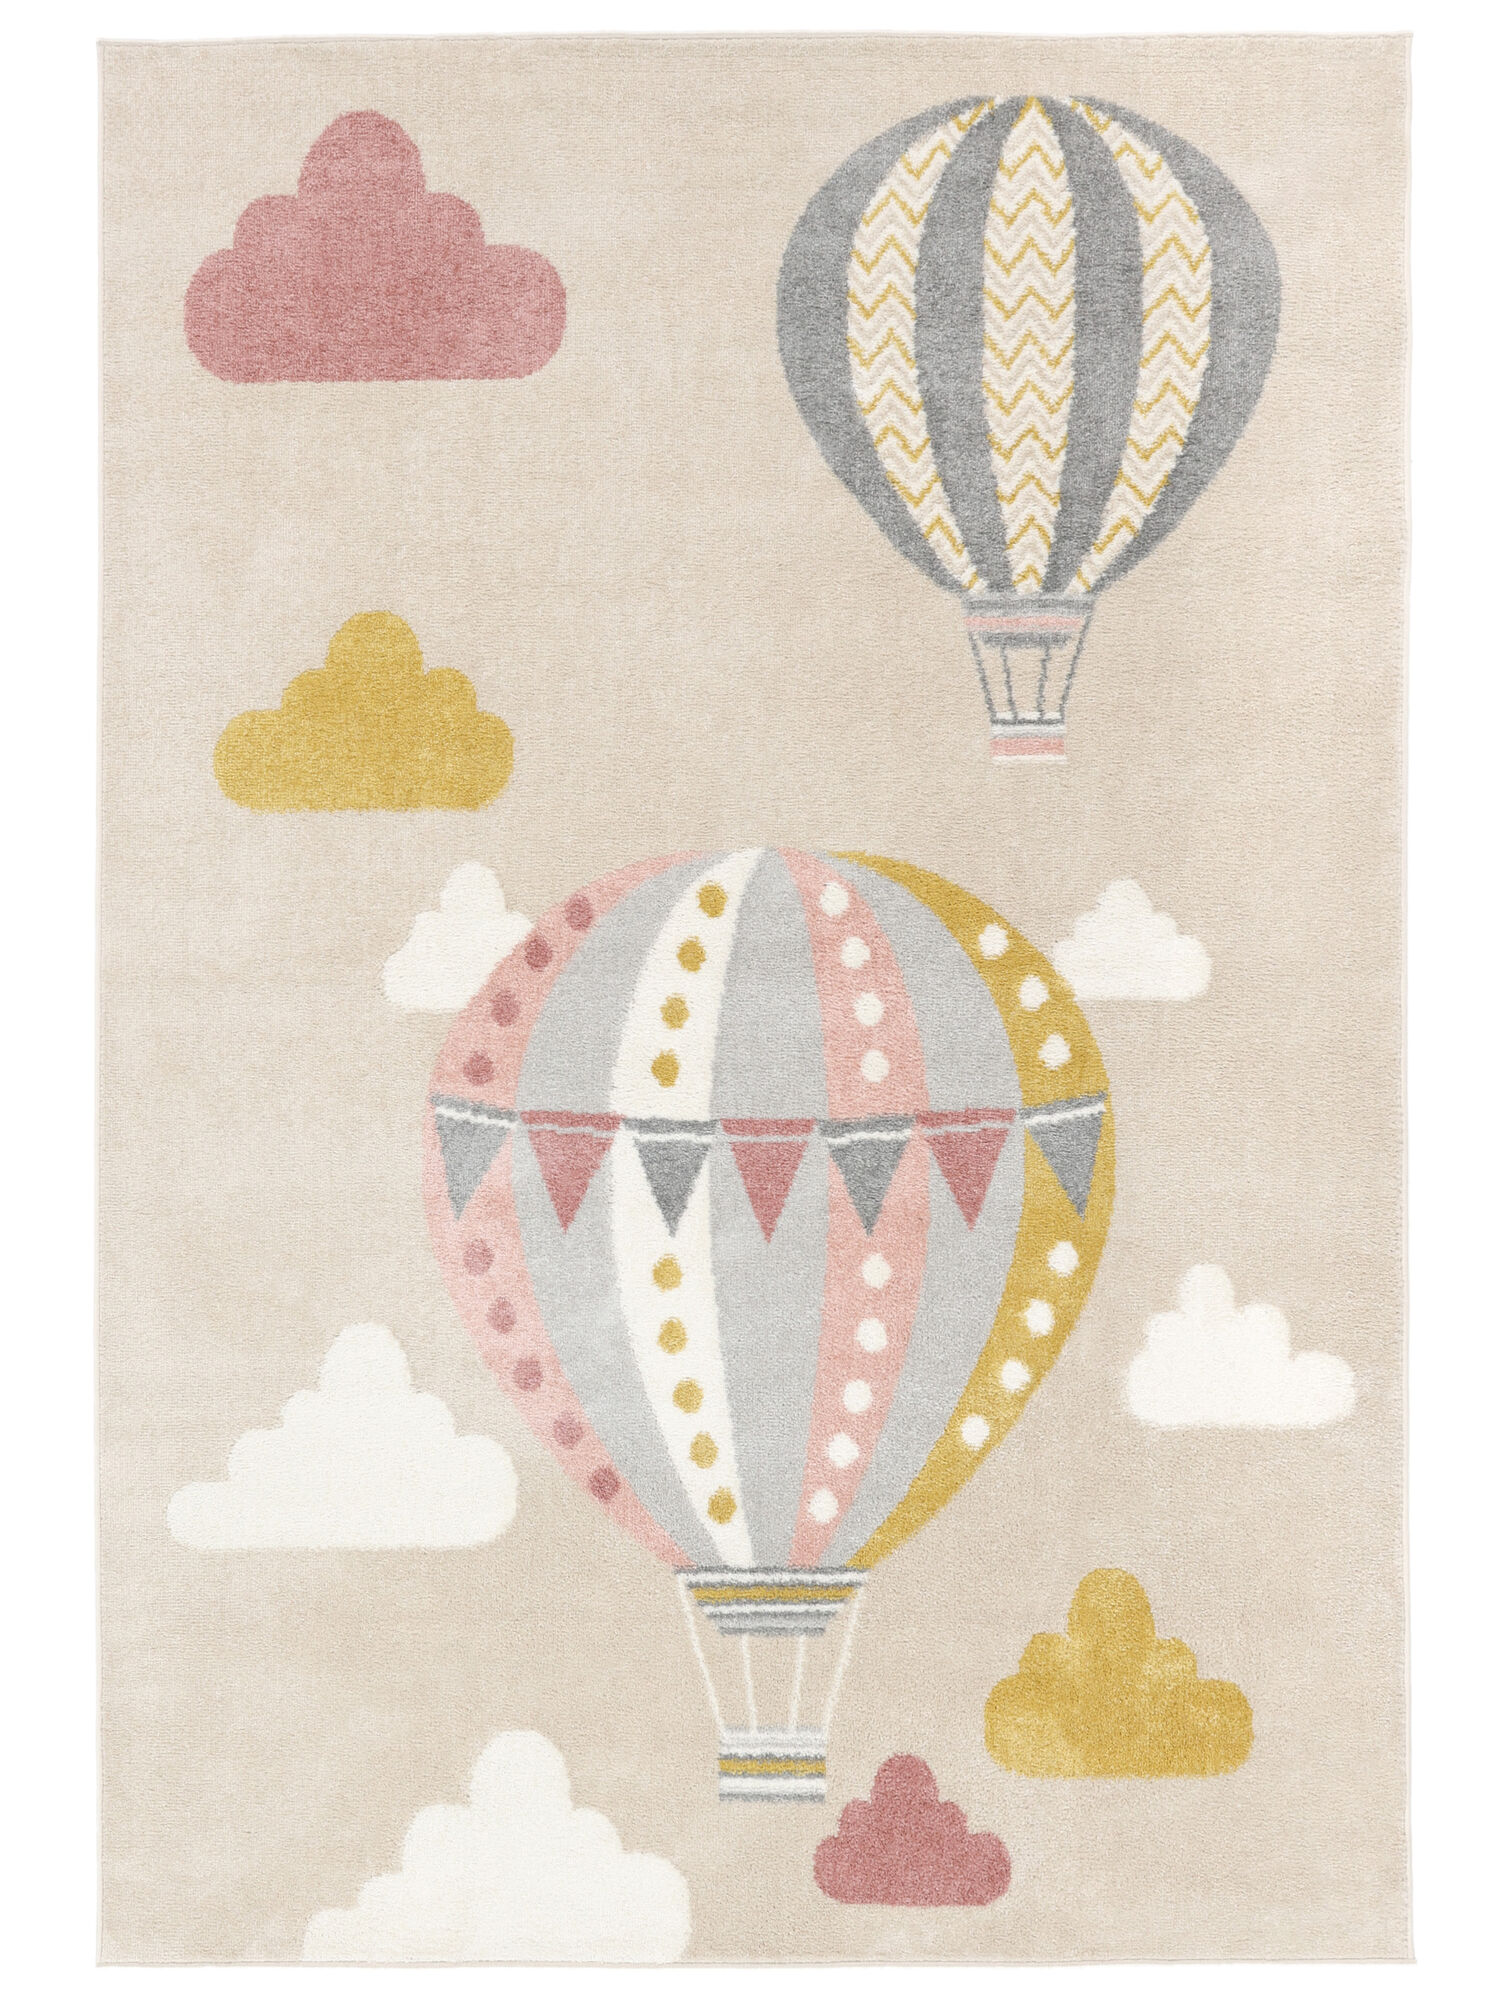 
    Balloon Ride - 100 x 160 cm
  